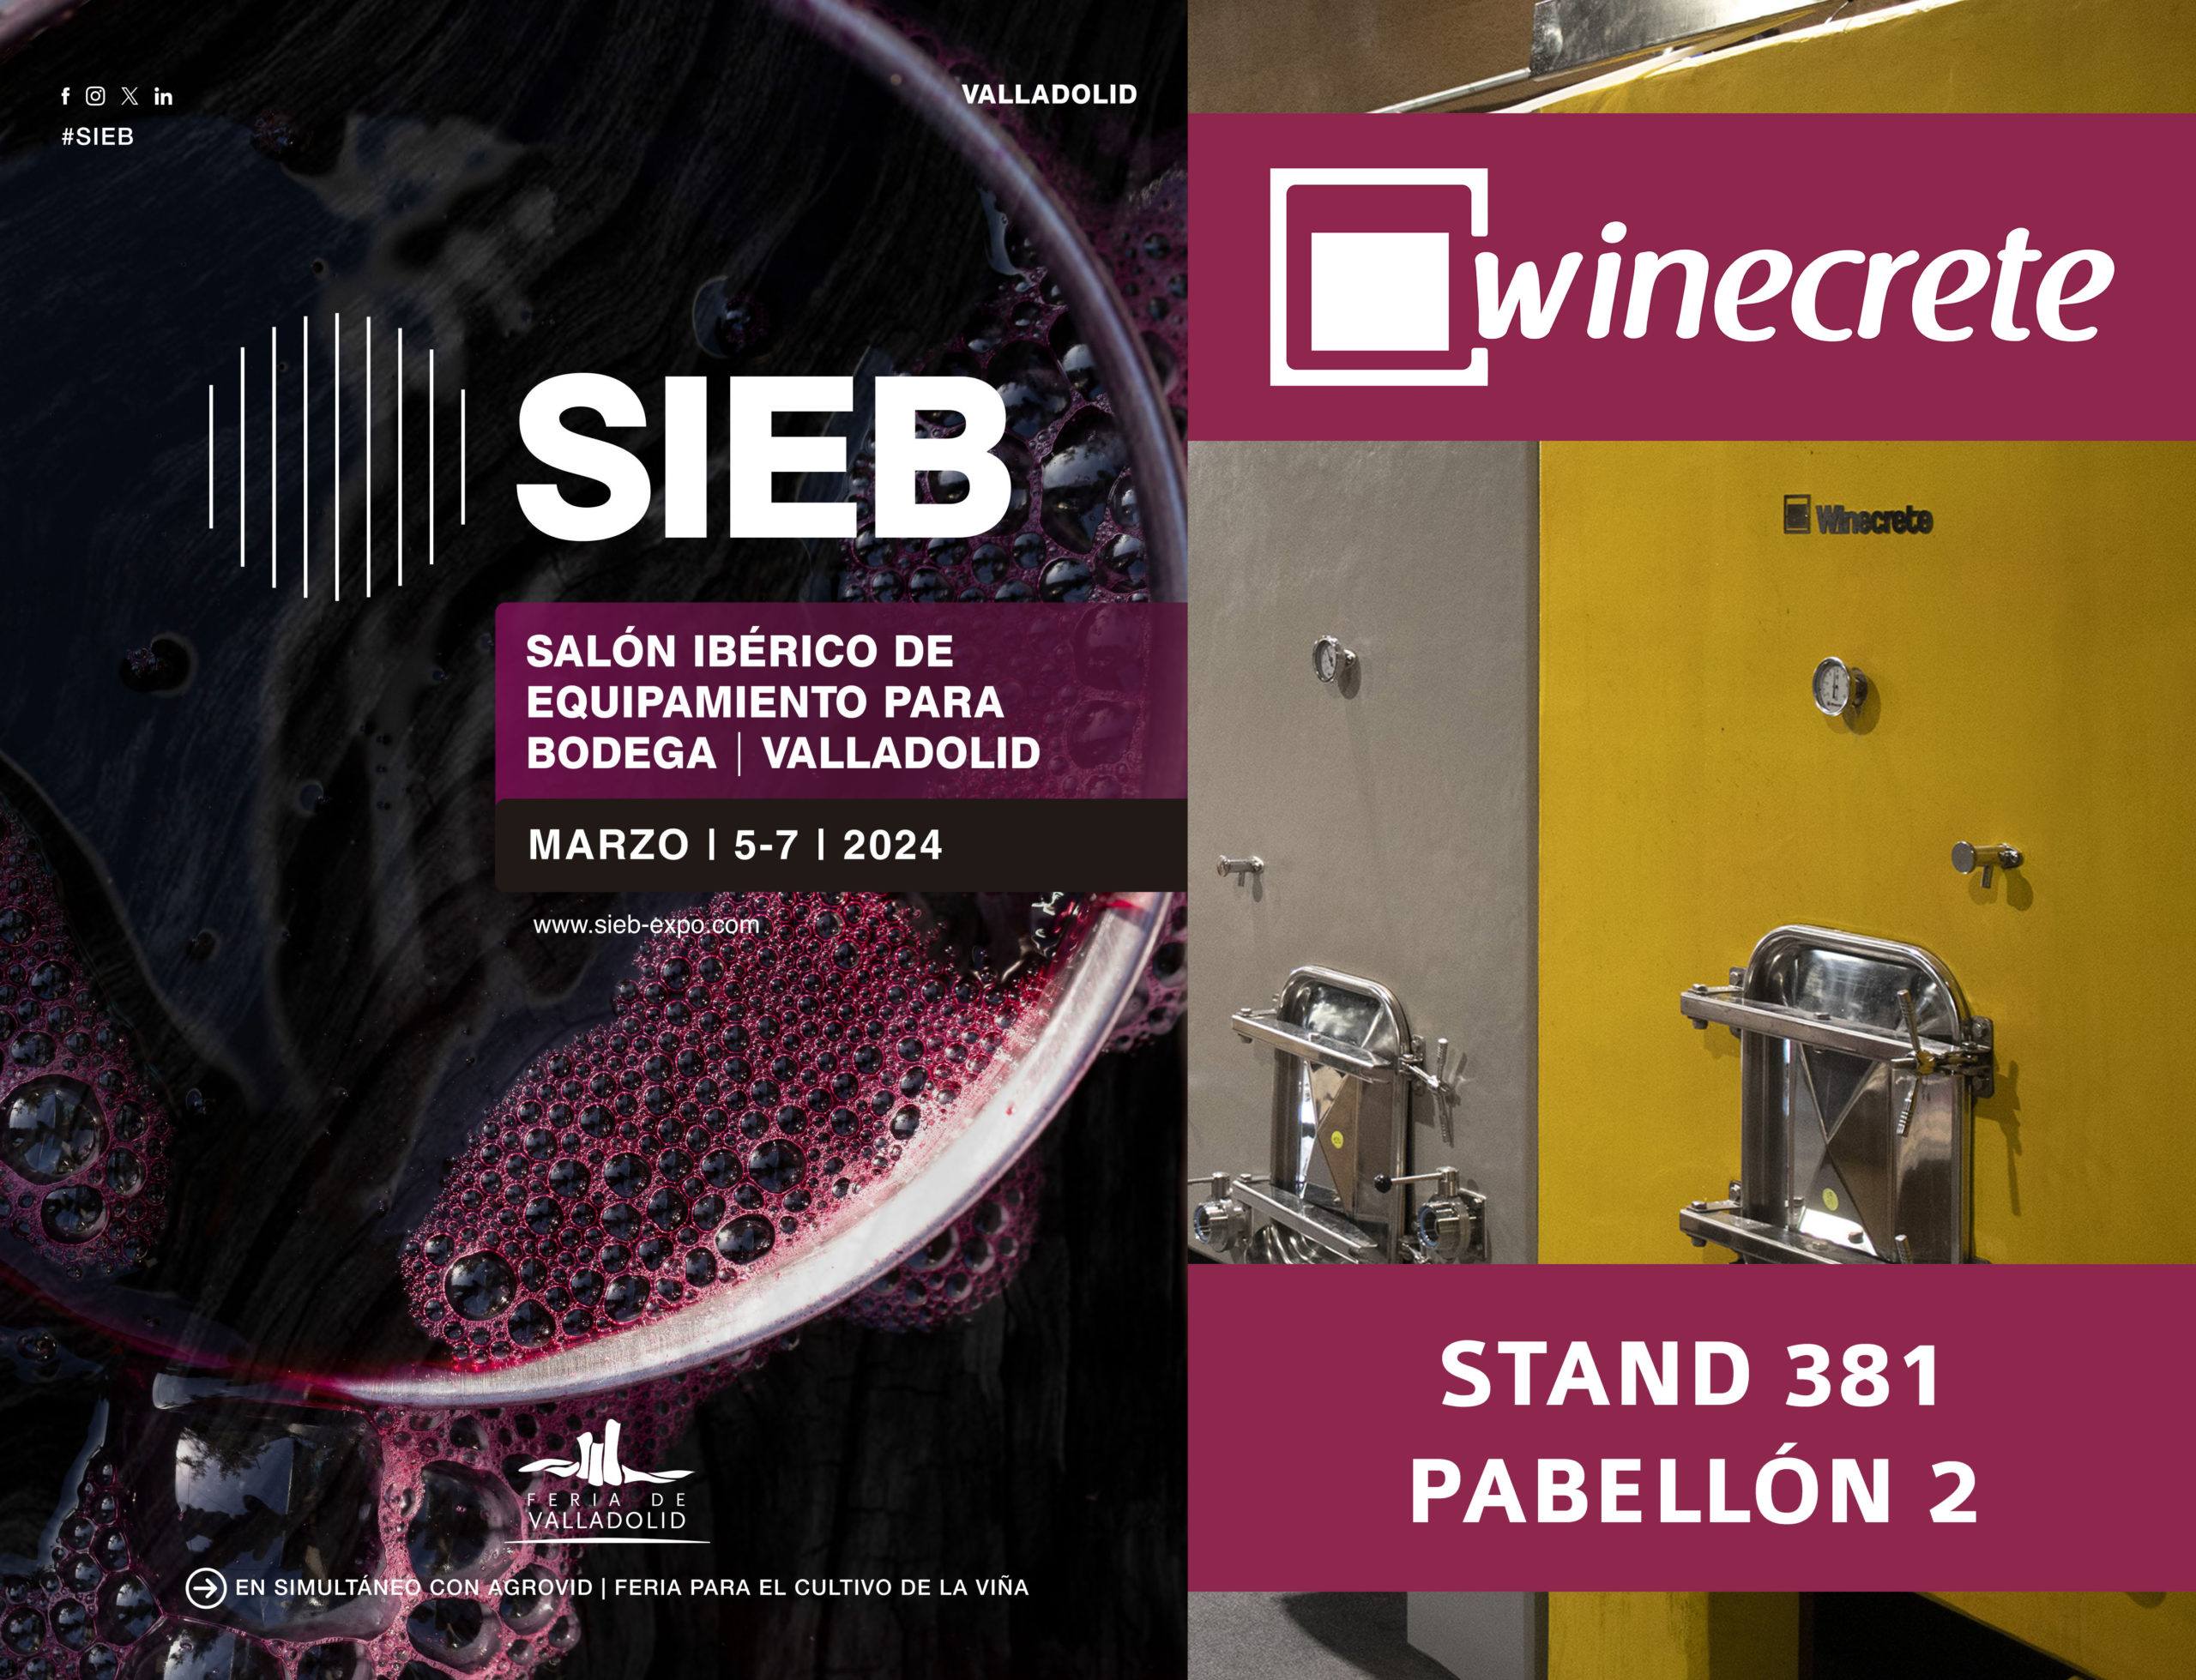 Winecrete en SIEB, el Salón Ibérico de Equipamiento para Bodegas (Feria de Valladolid)